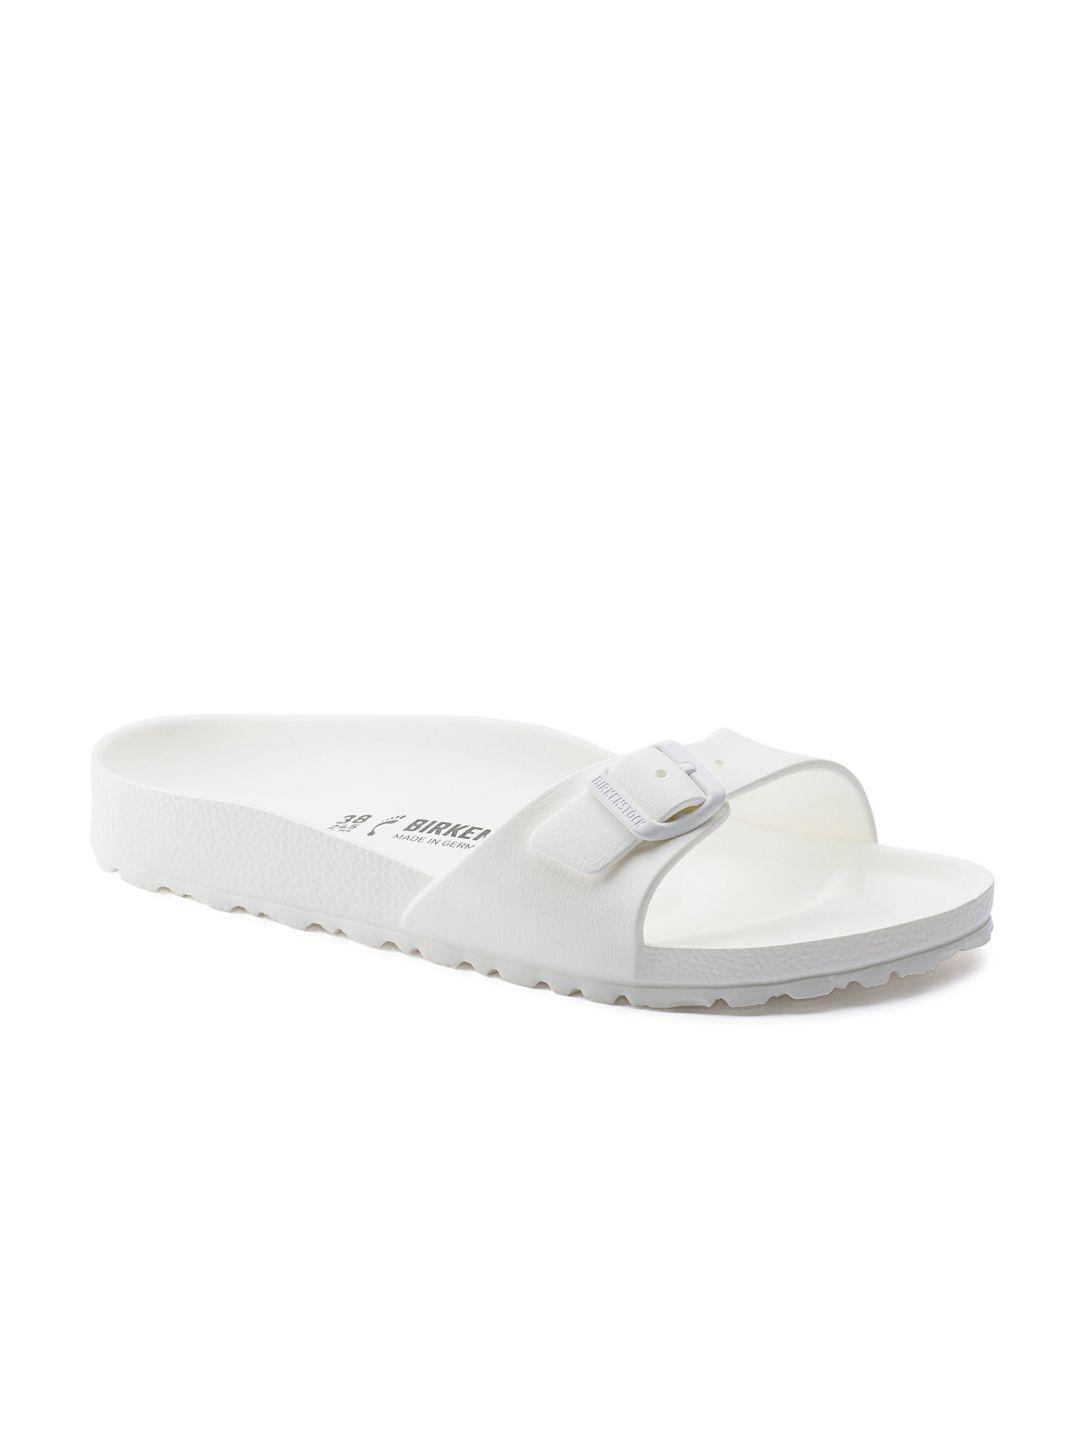 birkenstock women white solid lightweight waterproof madrid eva open toe narrow width flats